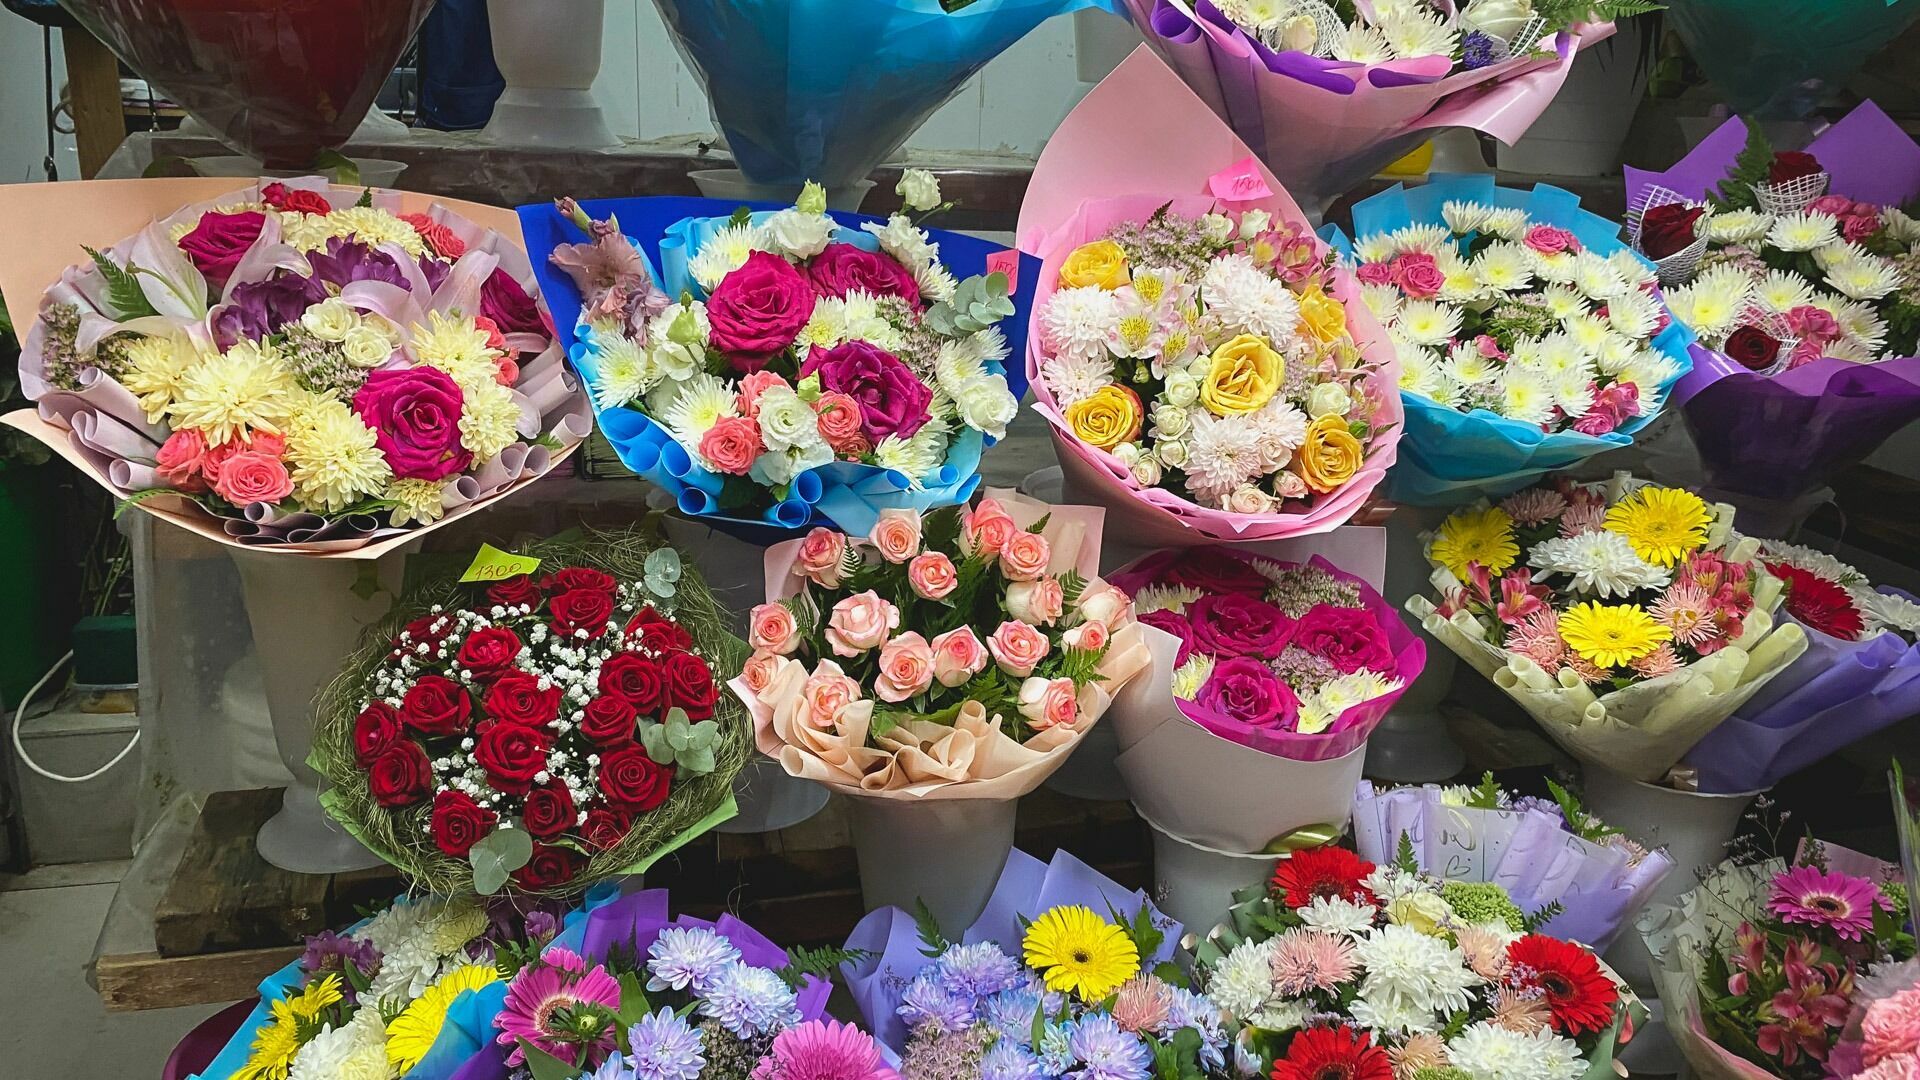 Розы, герберы и хризантемы: букеты цветов закупает администрация Нижнего Тагила